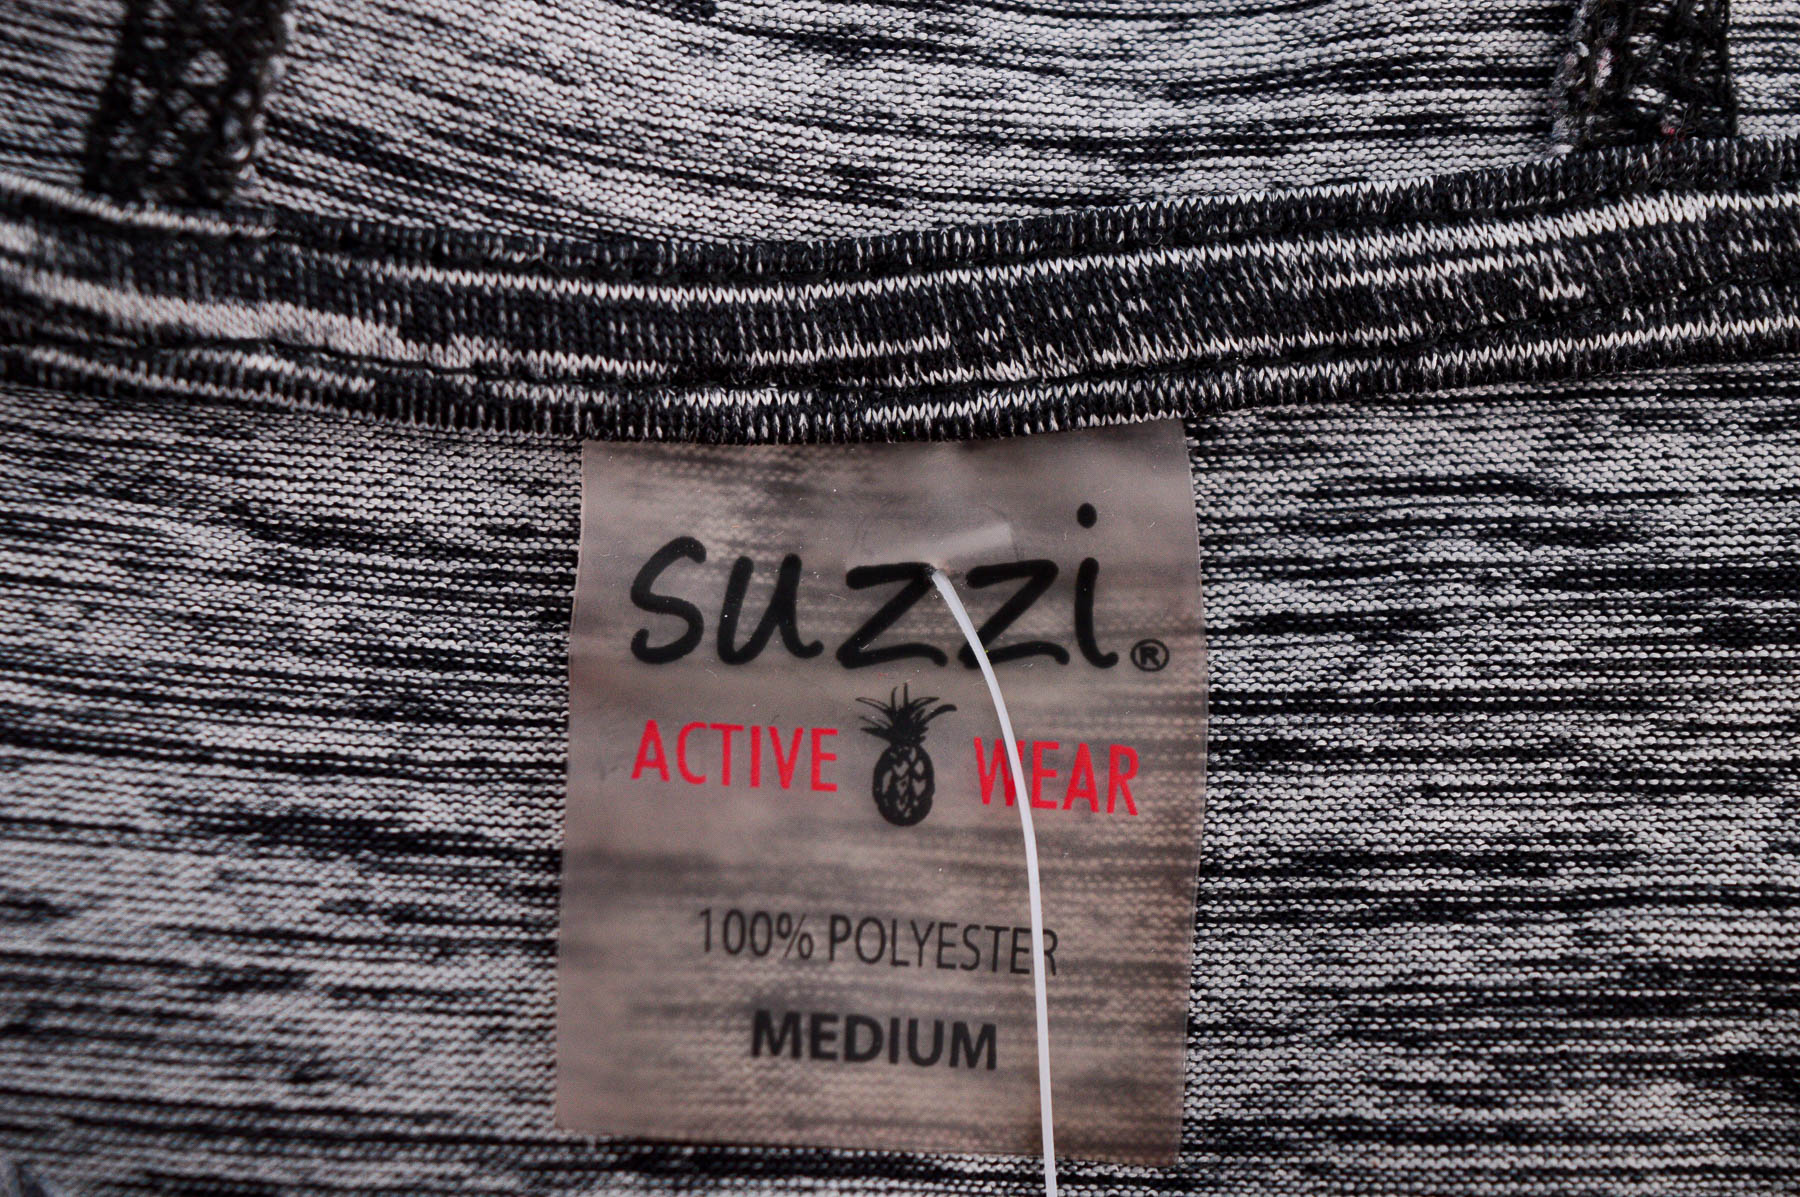 Дамска спортна блуза - Suzzi Activewear - 2